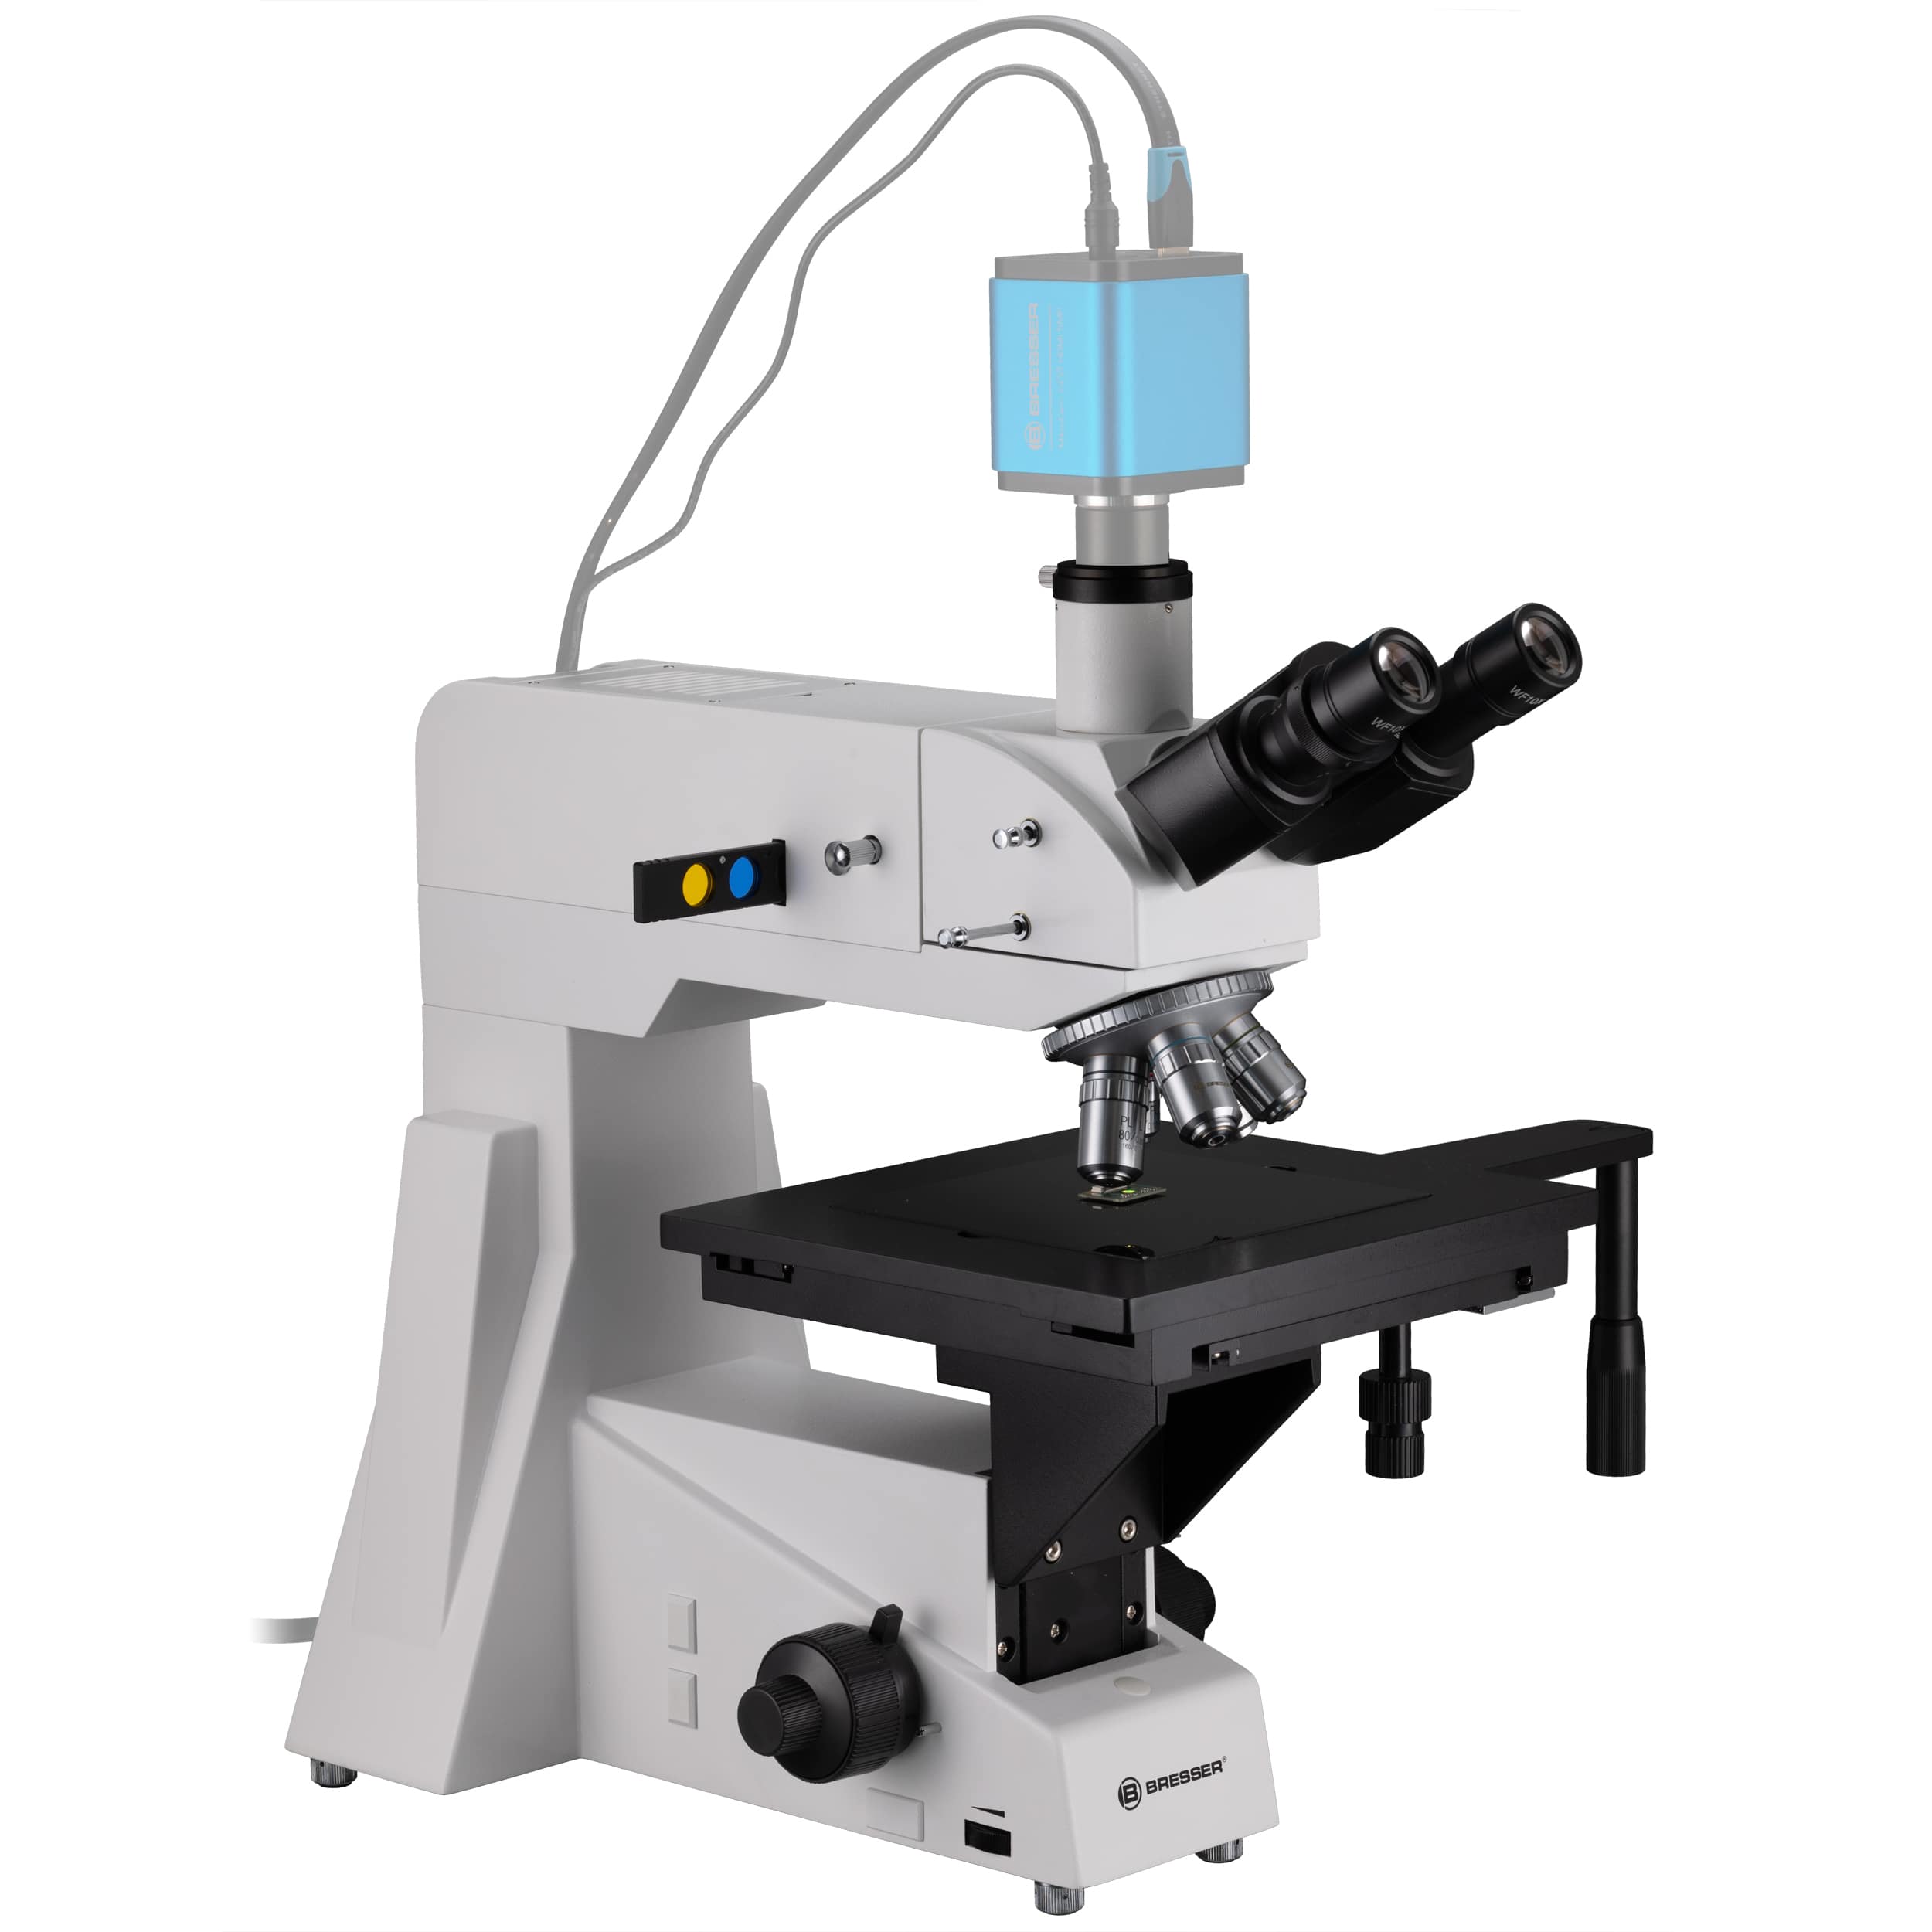   Microscopio rifrattore speciale per l'osservazione e l'analisi delle superfici  